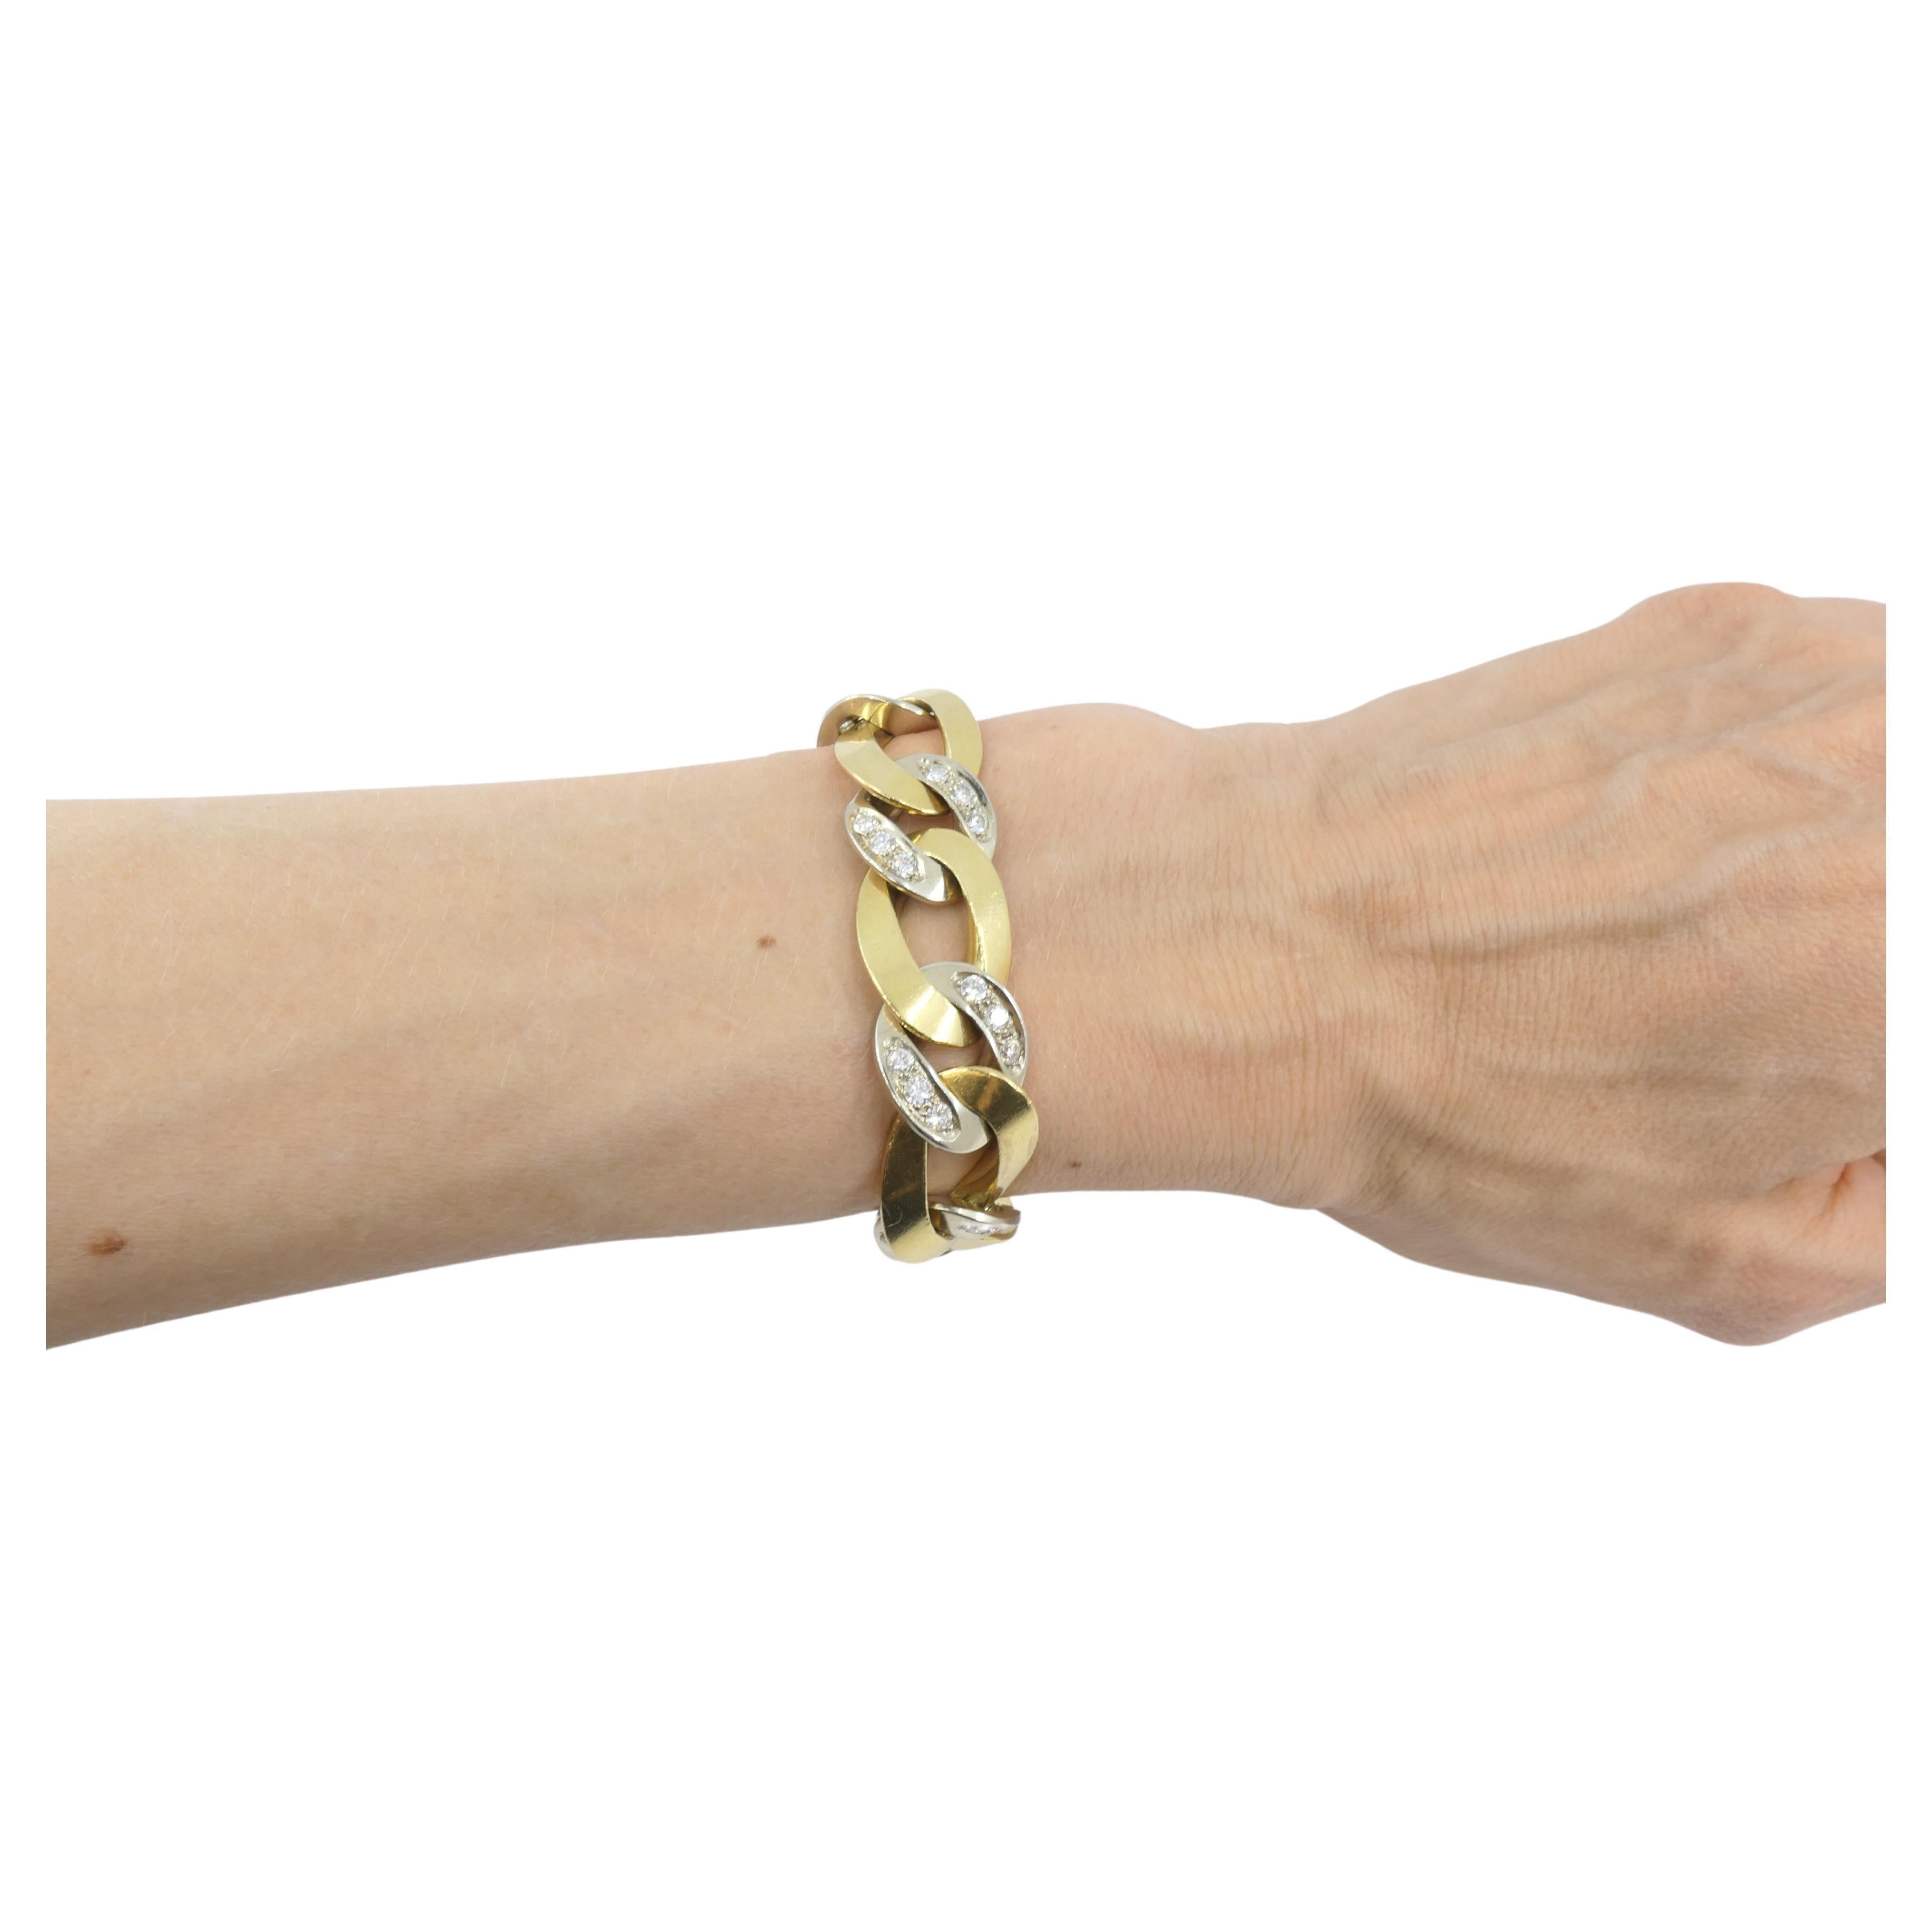 Un magnifique bracelet à maillons avec un bling bling par Pomellato. Réalisé en or 18k, le bracelet comprend des maillons allongés en or jaune alternant avec des maillons ronds en or blanc. Ces derniers sont ornés de diamants qui sont sertis par